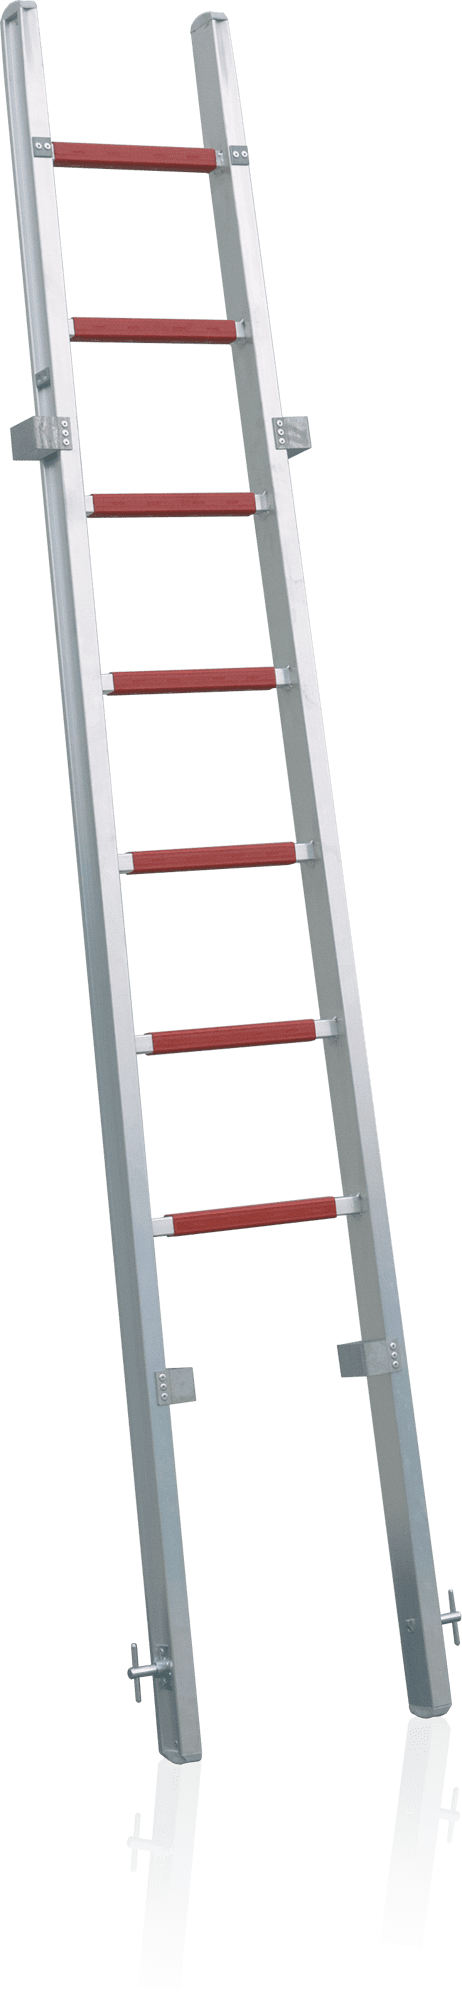 prídavný diel pre hasičský rebrík nasúvací